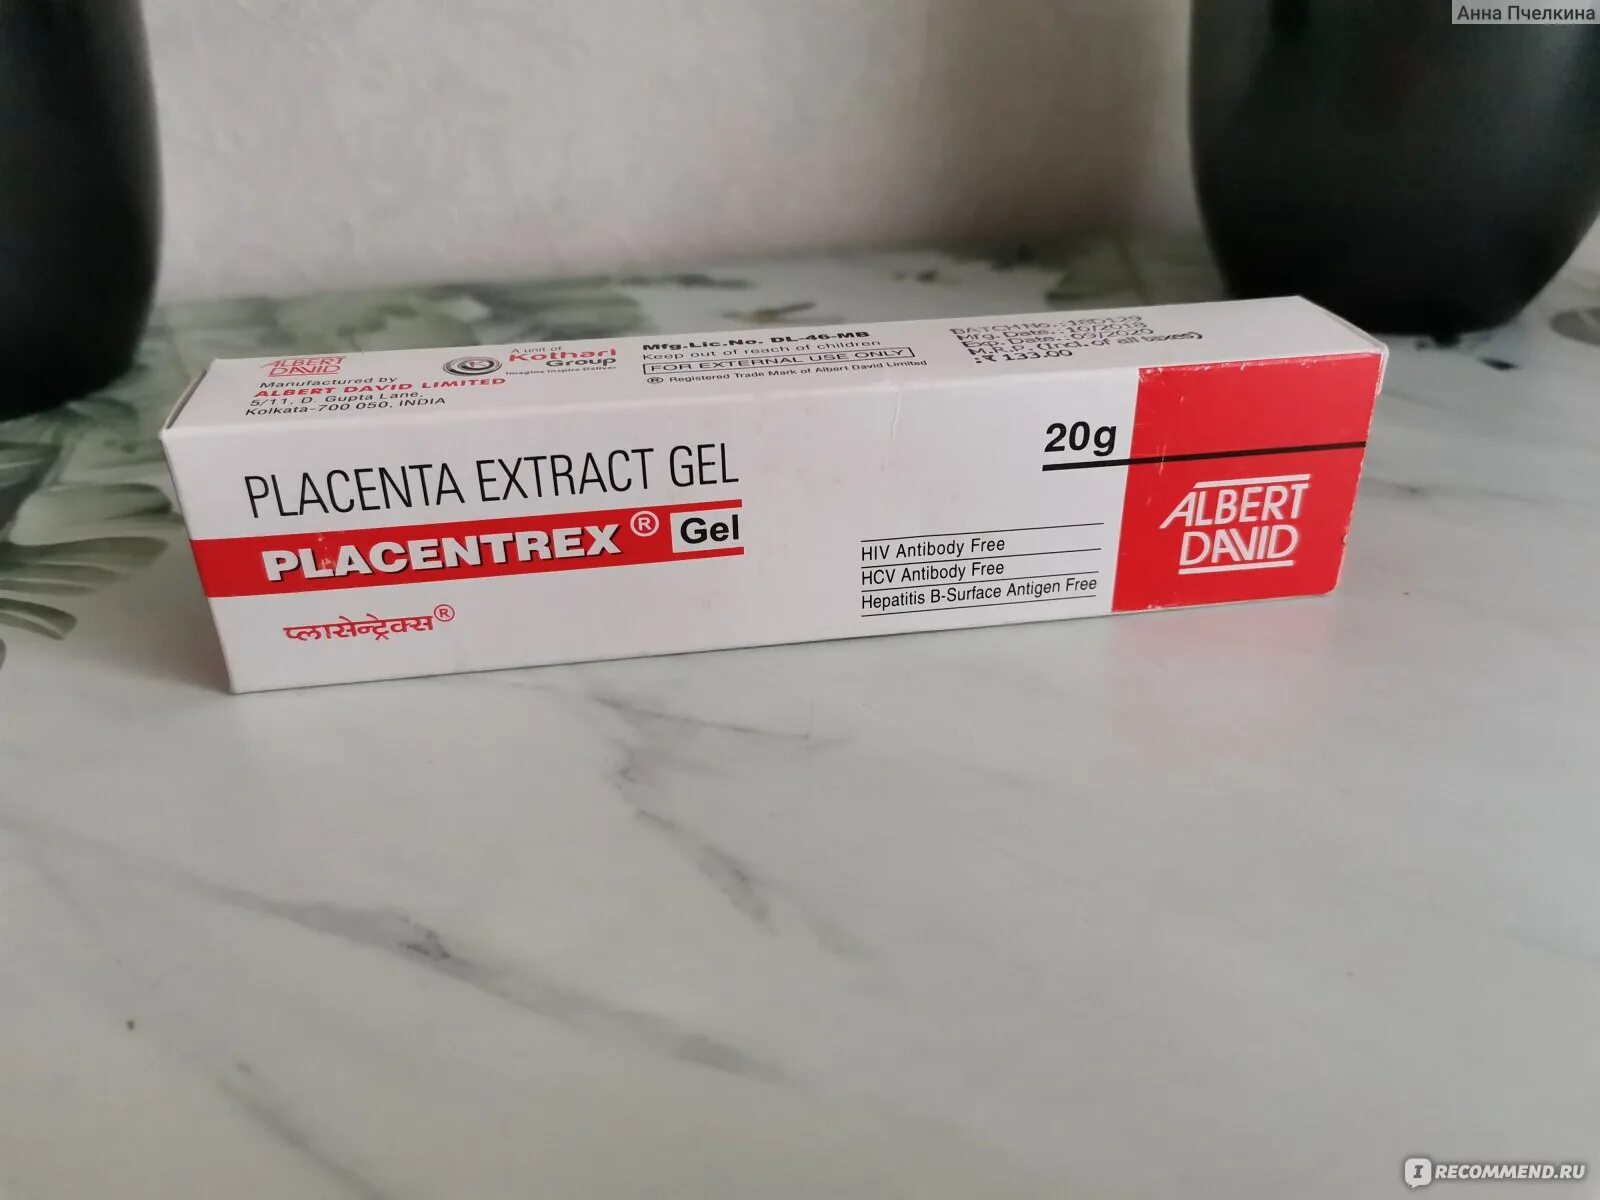 Индийский крем плацента. Плацентрекс placentrex gel